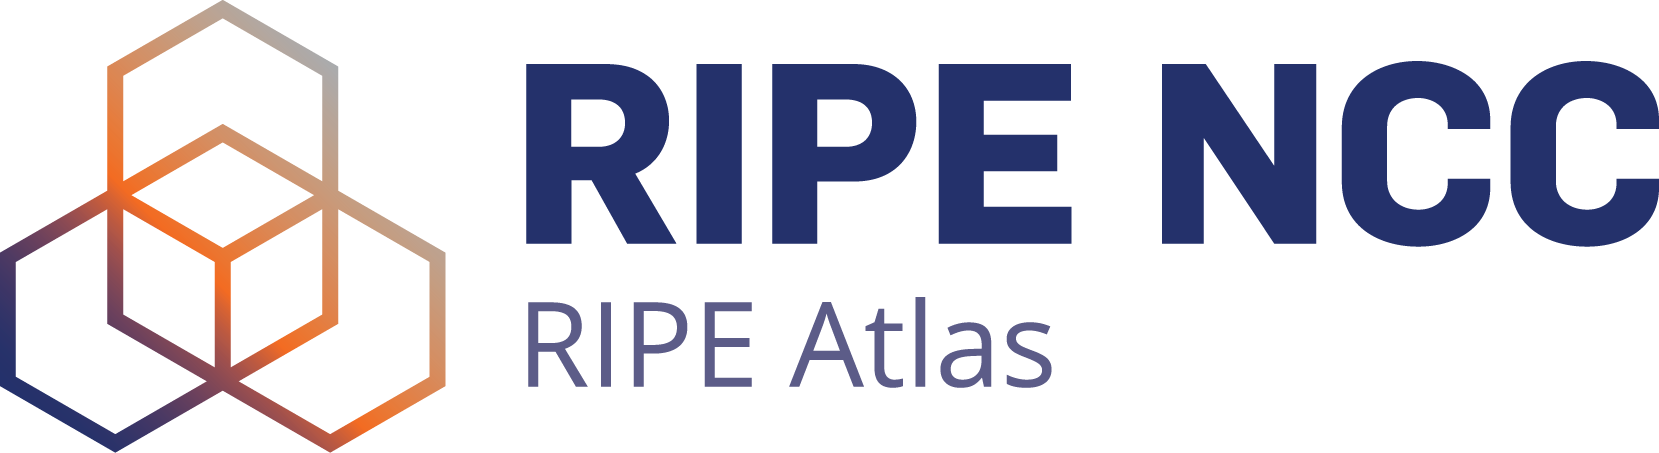 RIPE Atlas project logo